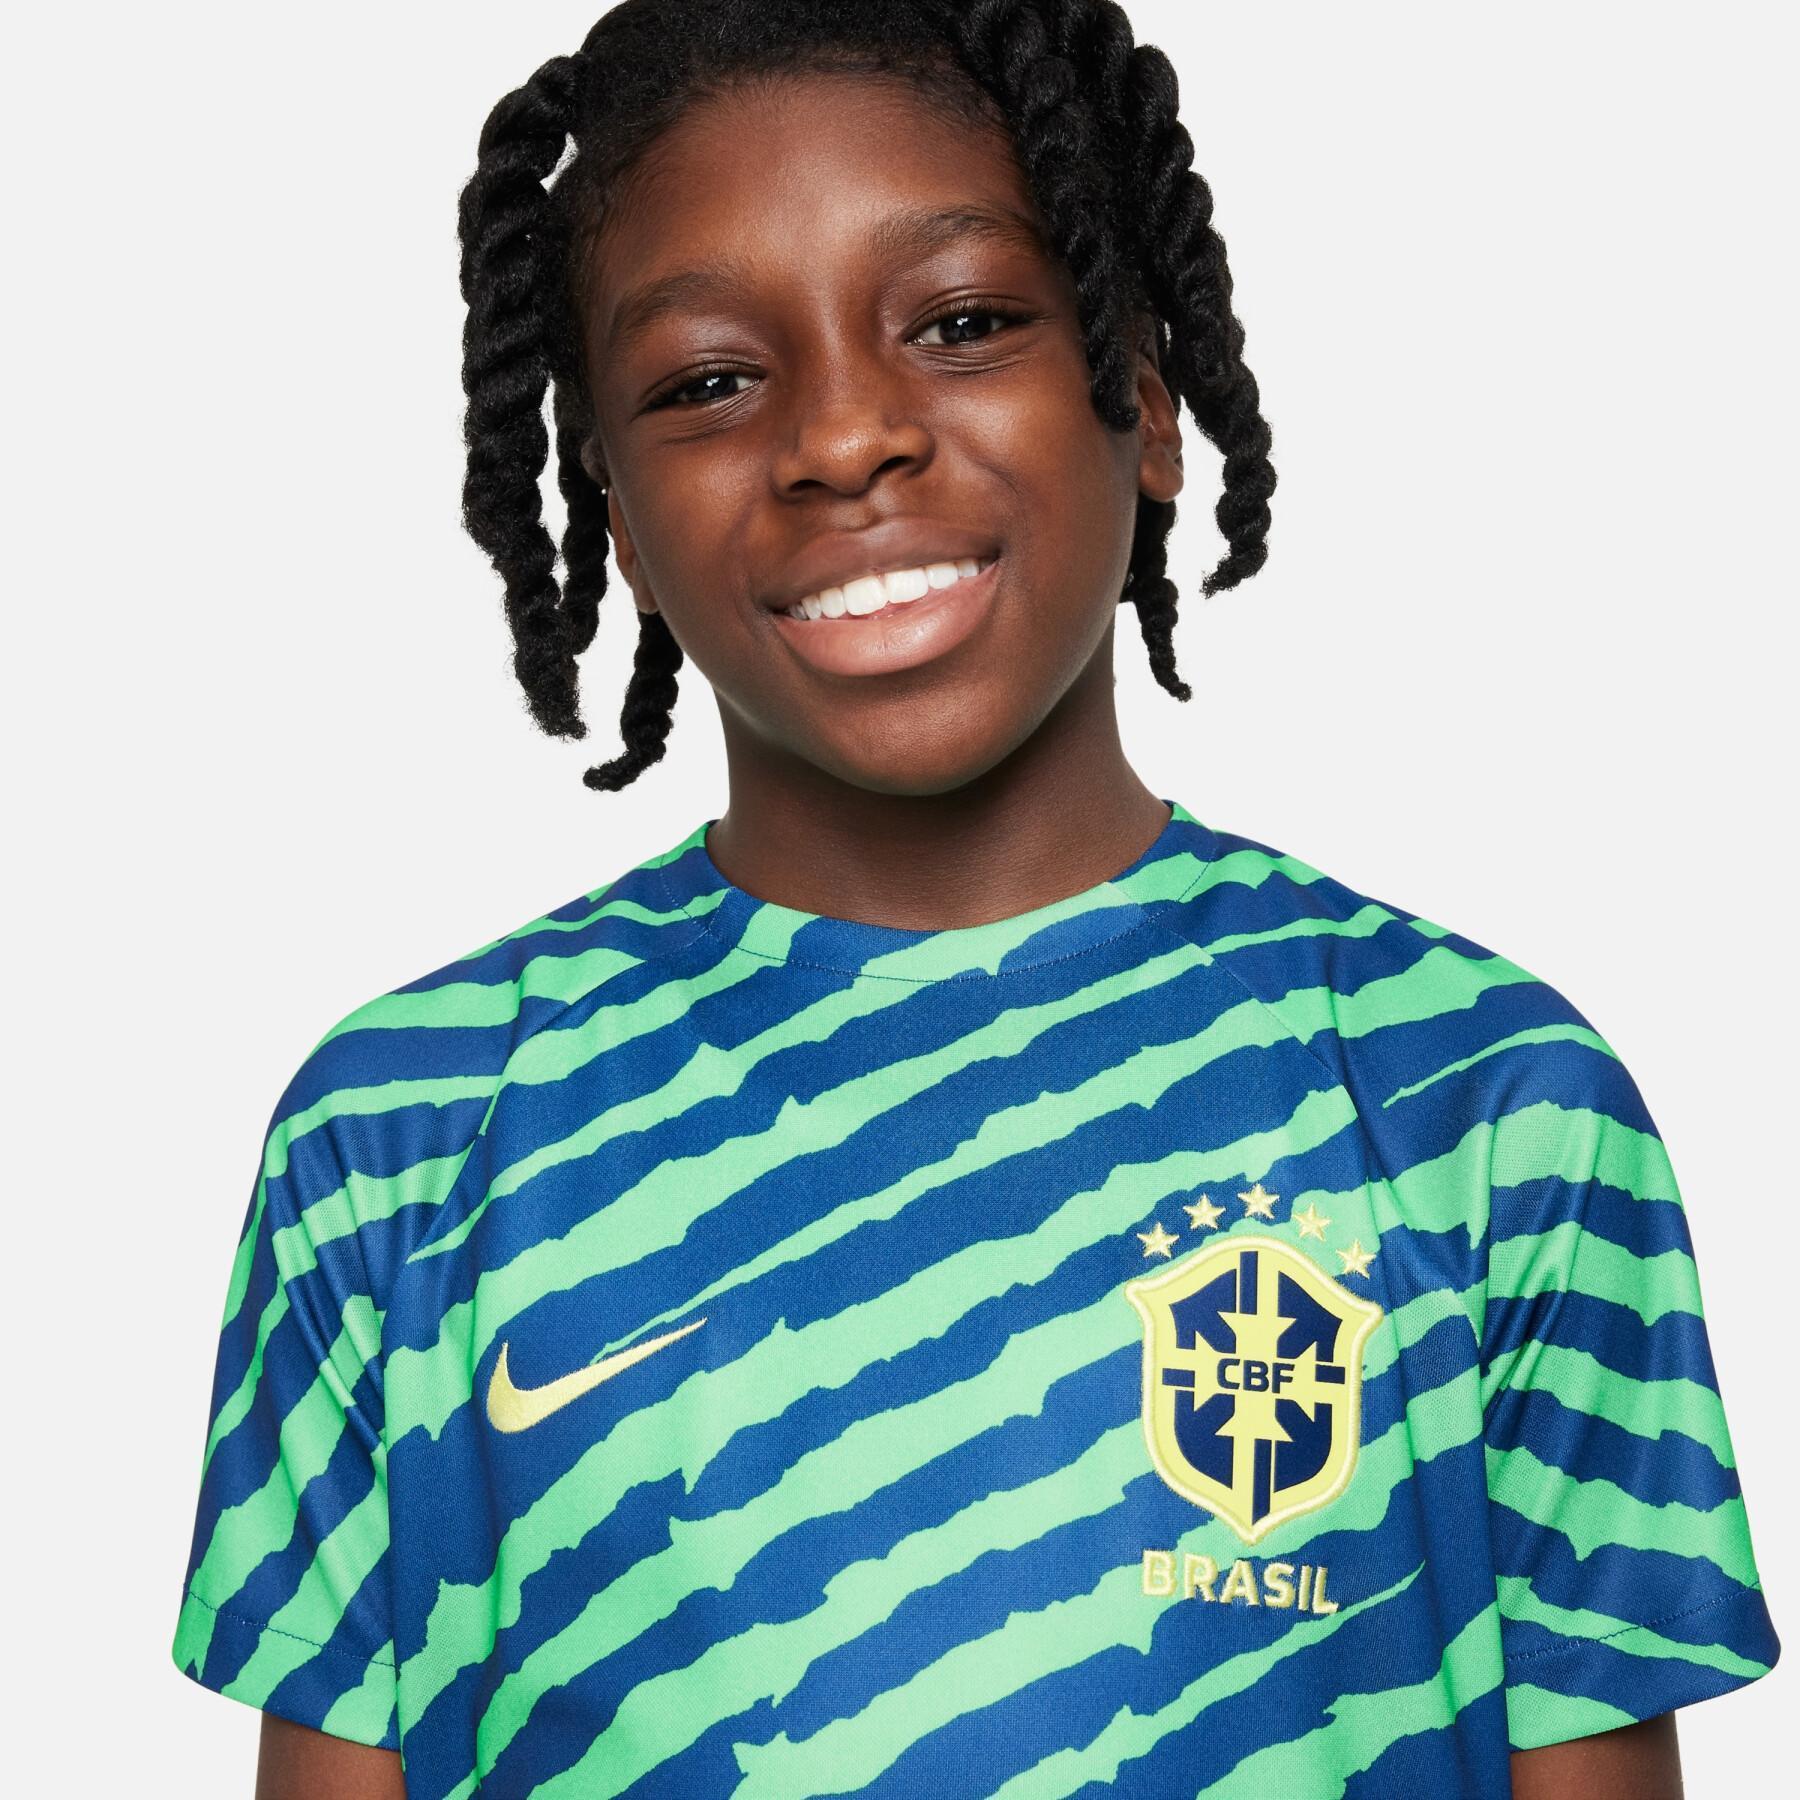 Koszulka przedmeczowa dla dzieci na Mistrzostwa Świata 2022 Brésil